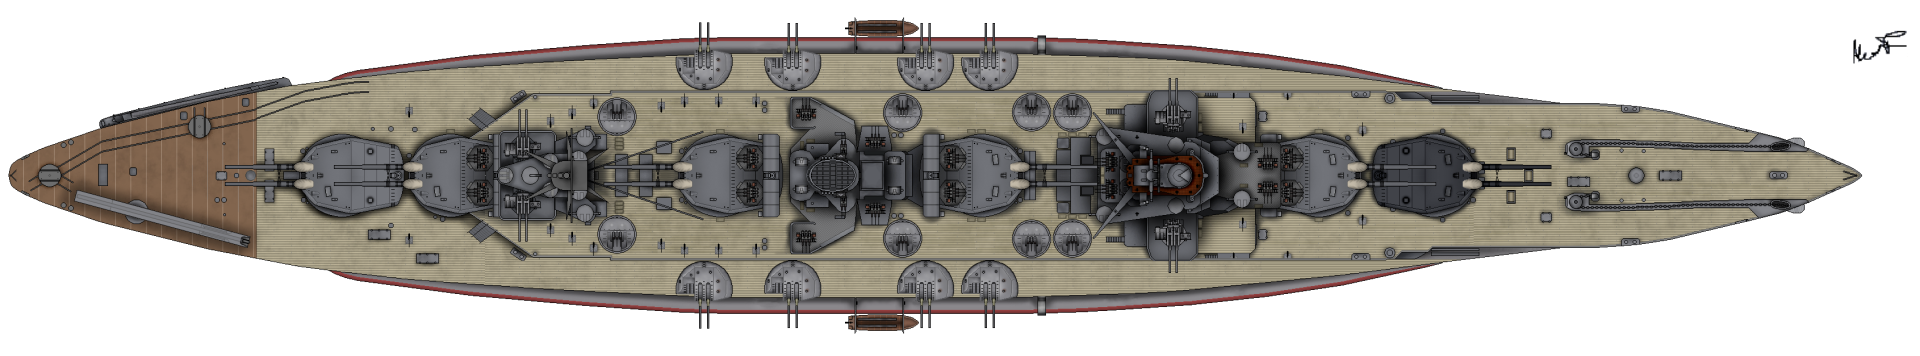 Aphrodite-class battleship, extended AAA